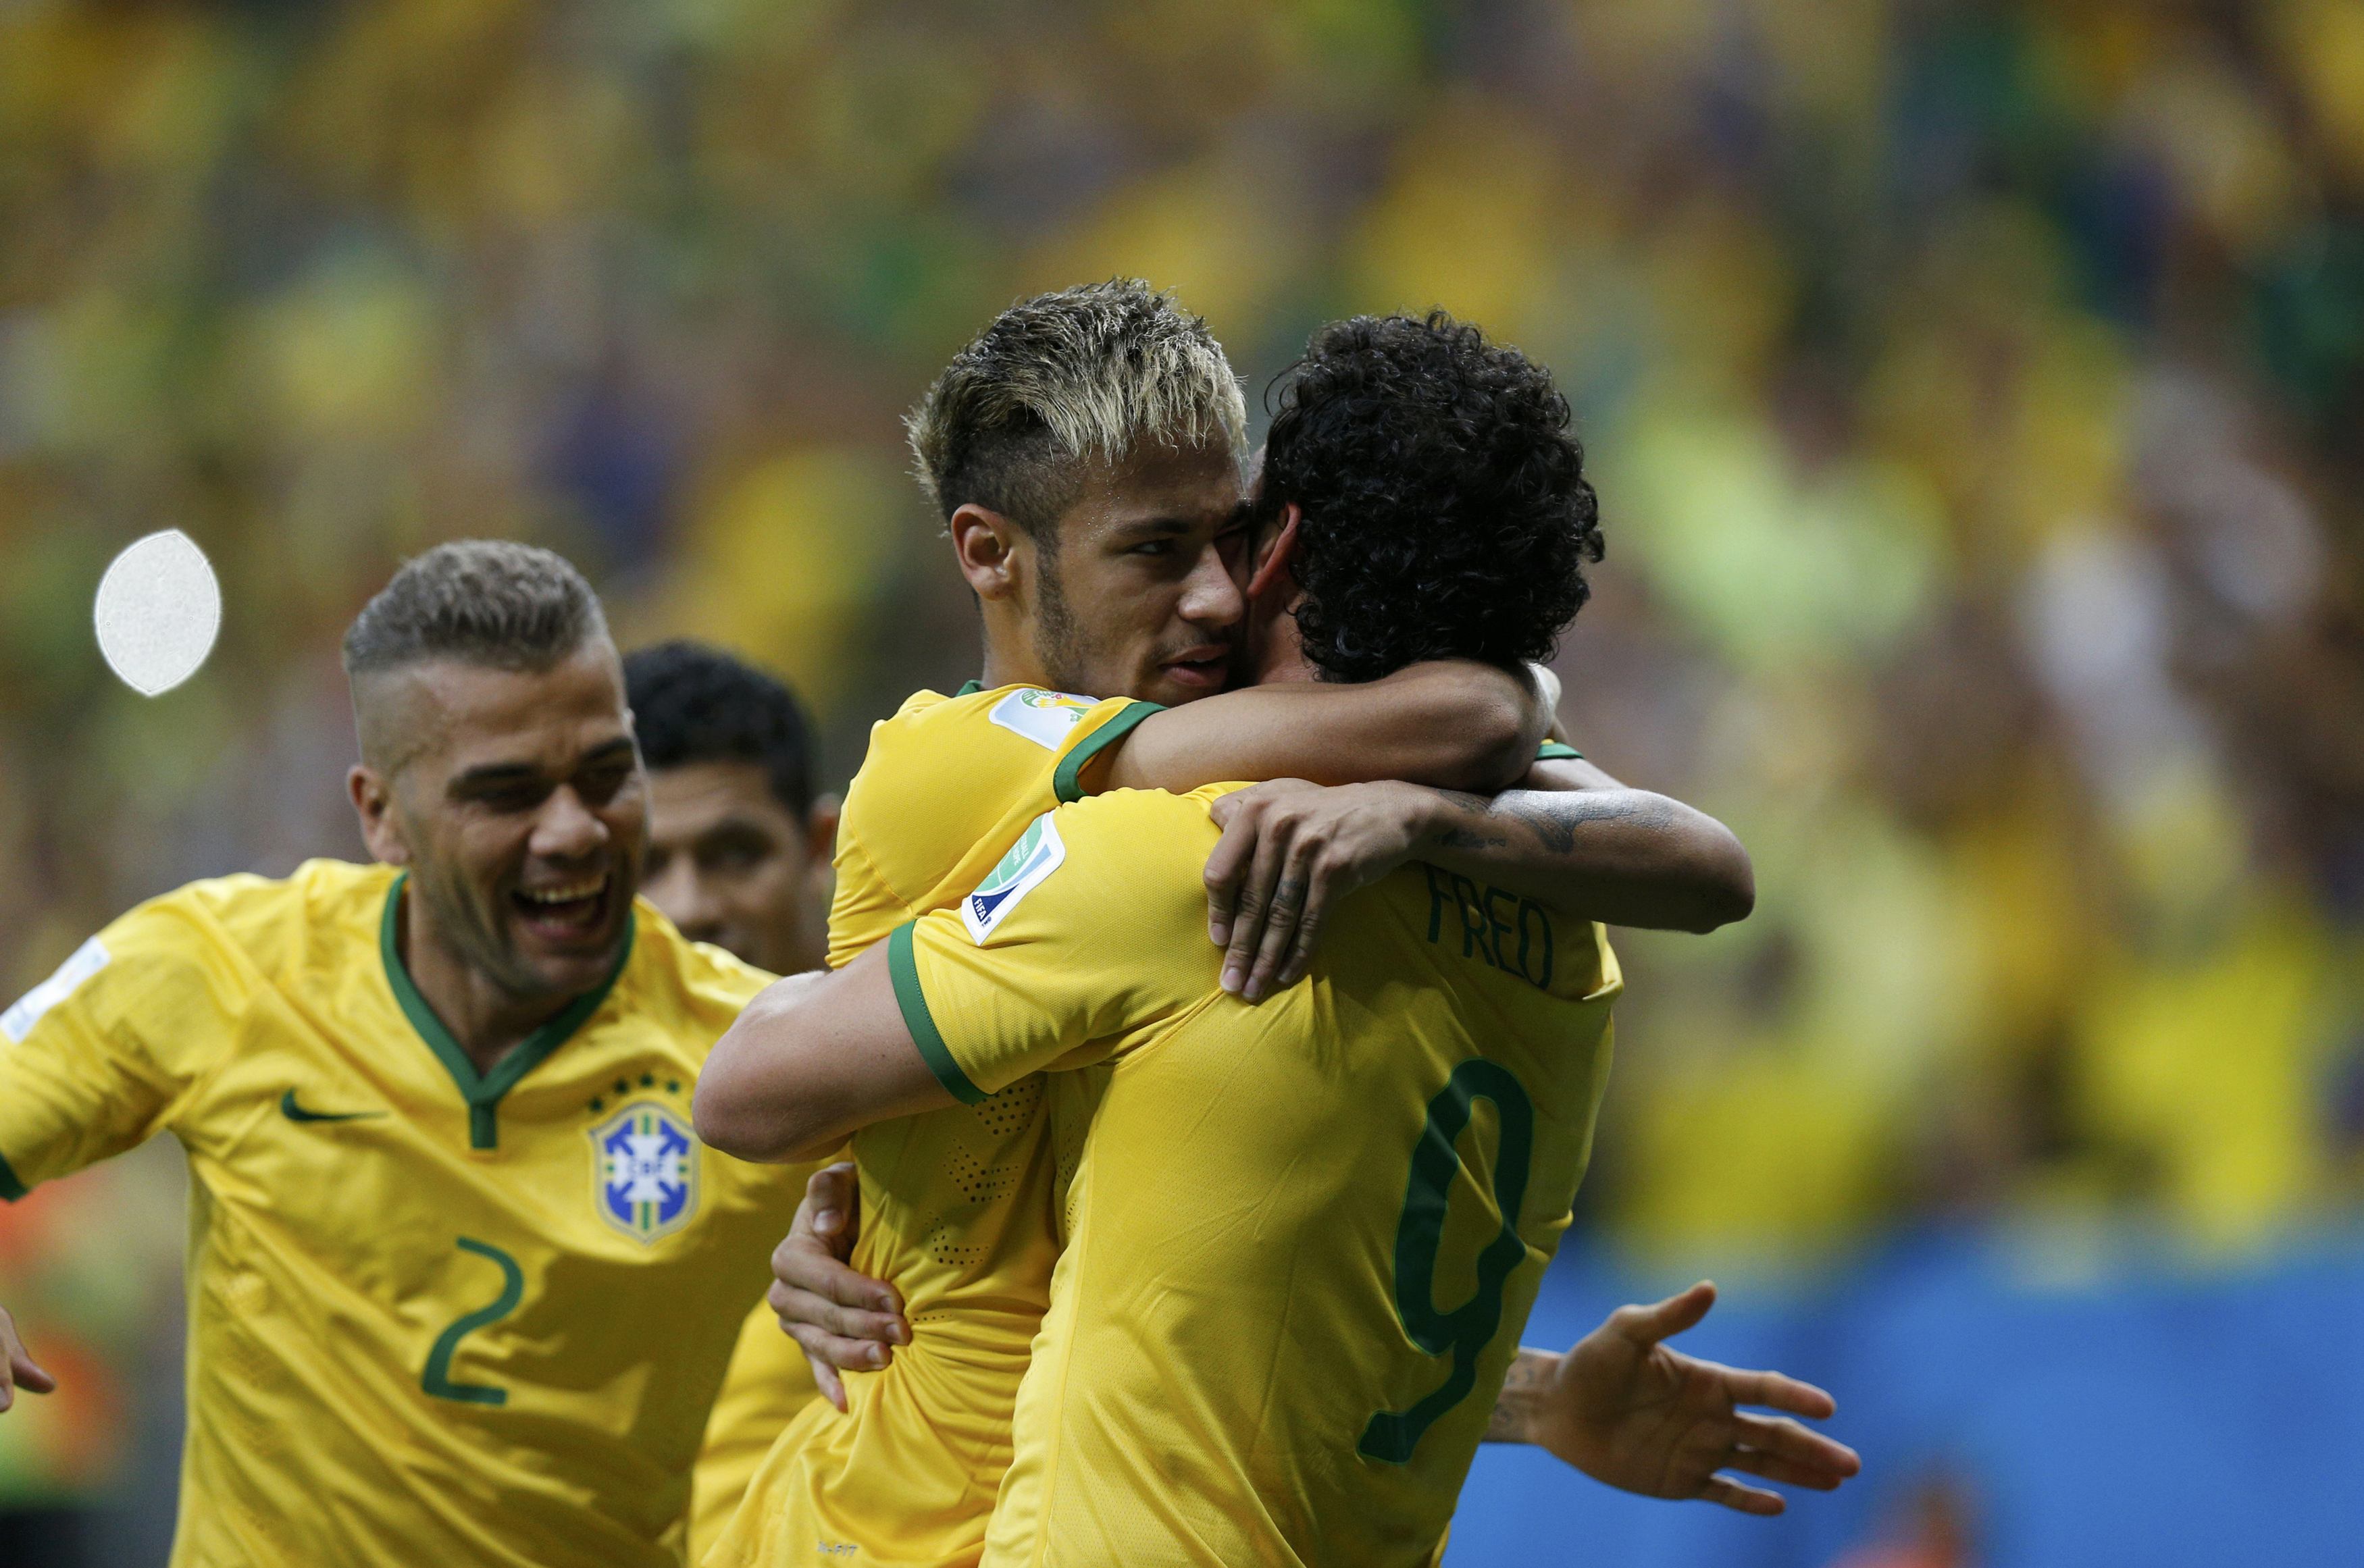 Der 39-Jährige spielte zusammen mit Neymar im brasilianischen Team